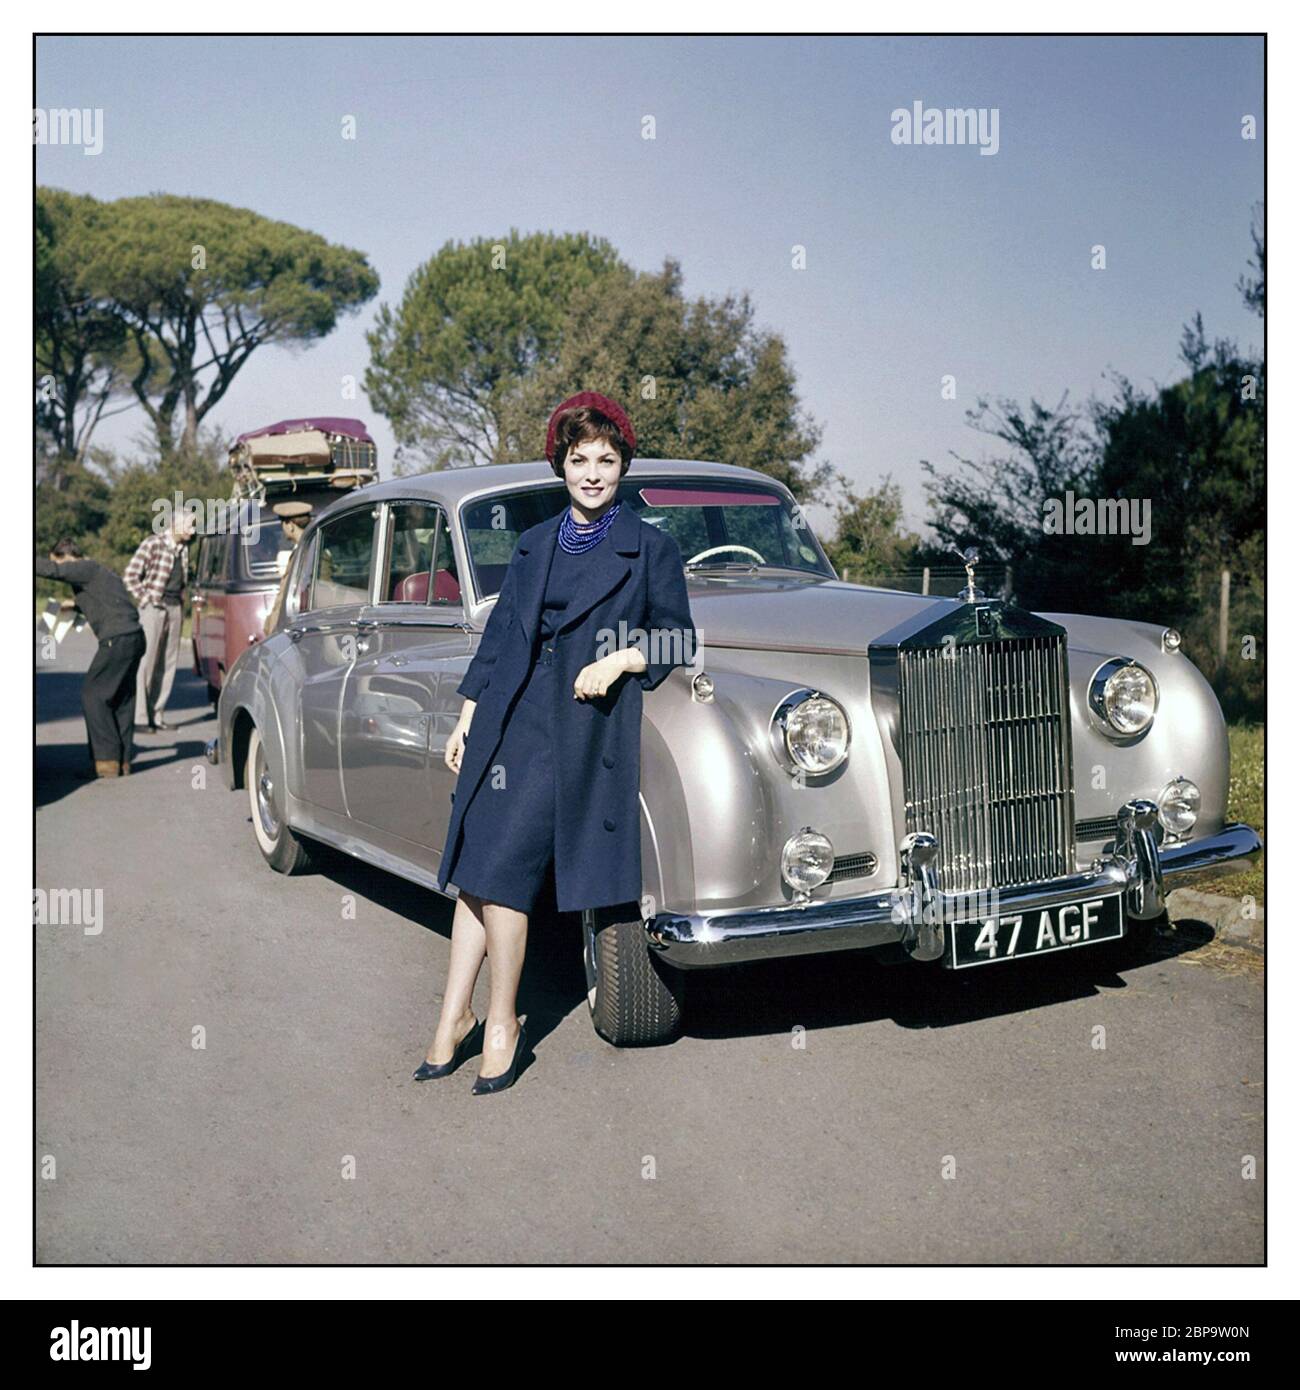 La vintage Rolls-Royce Silver Cloud i con la proprietaria Gina Lollobrigida in una location cinematografica, è un'attrice, fotogiornalista e scultore italiano. Fu una delle attrici europee più belle e di alto profilo degli anni '50/'60 Foto Stock